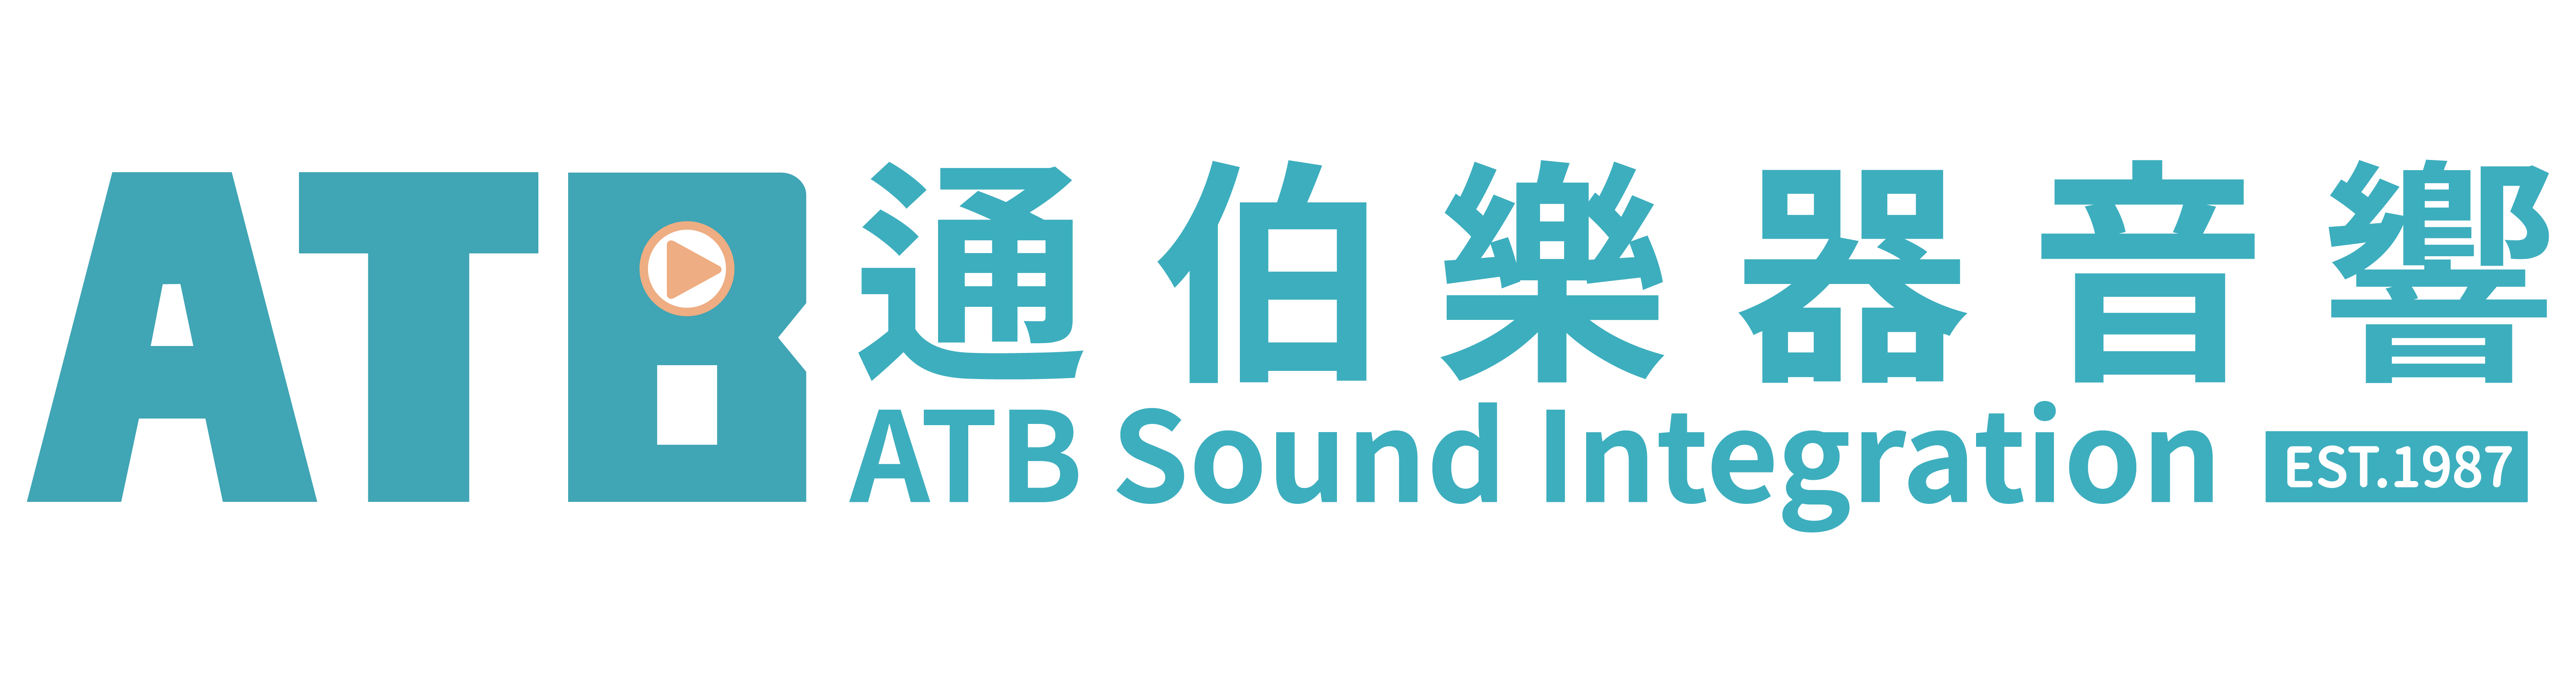 ATB_logo_header-01